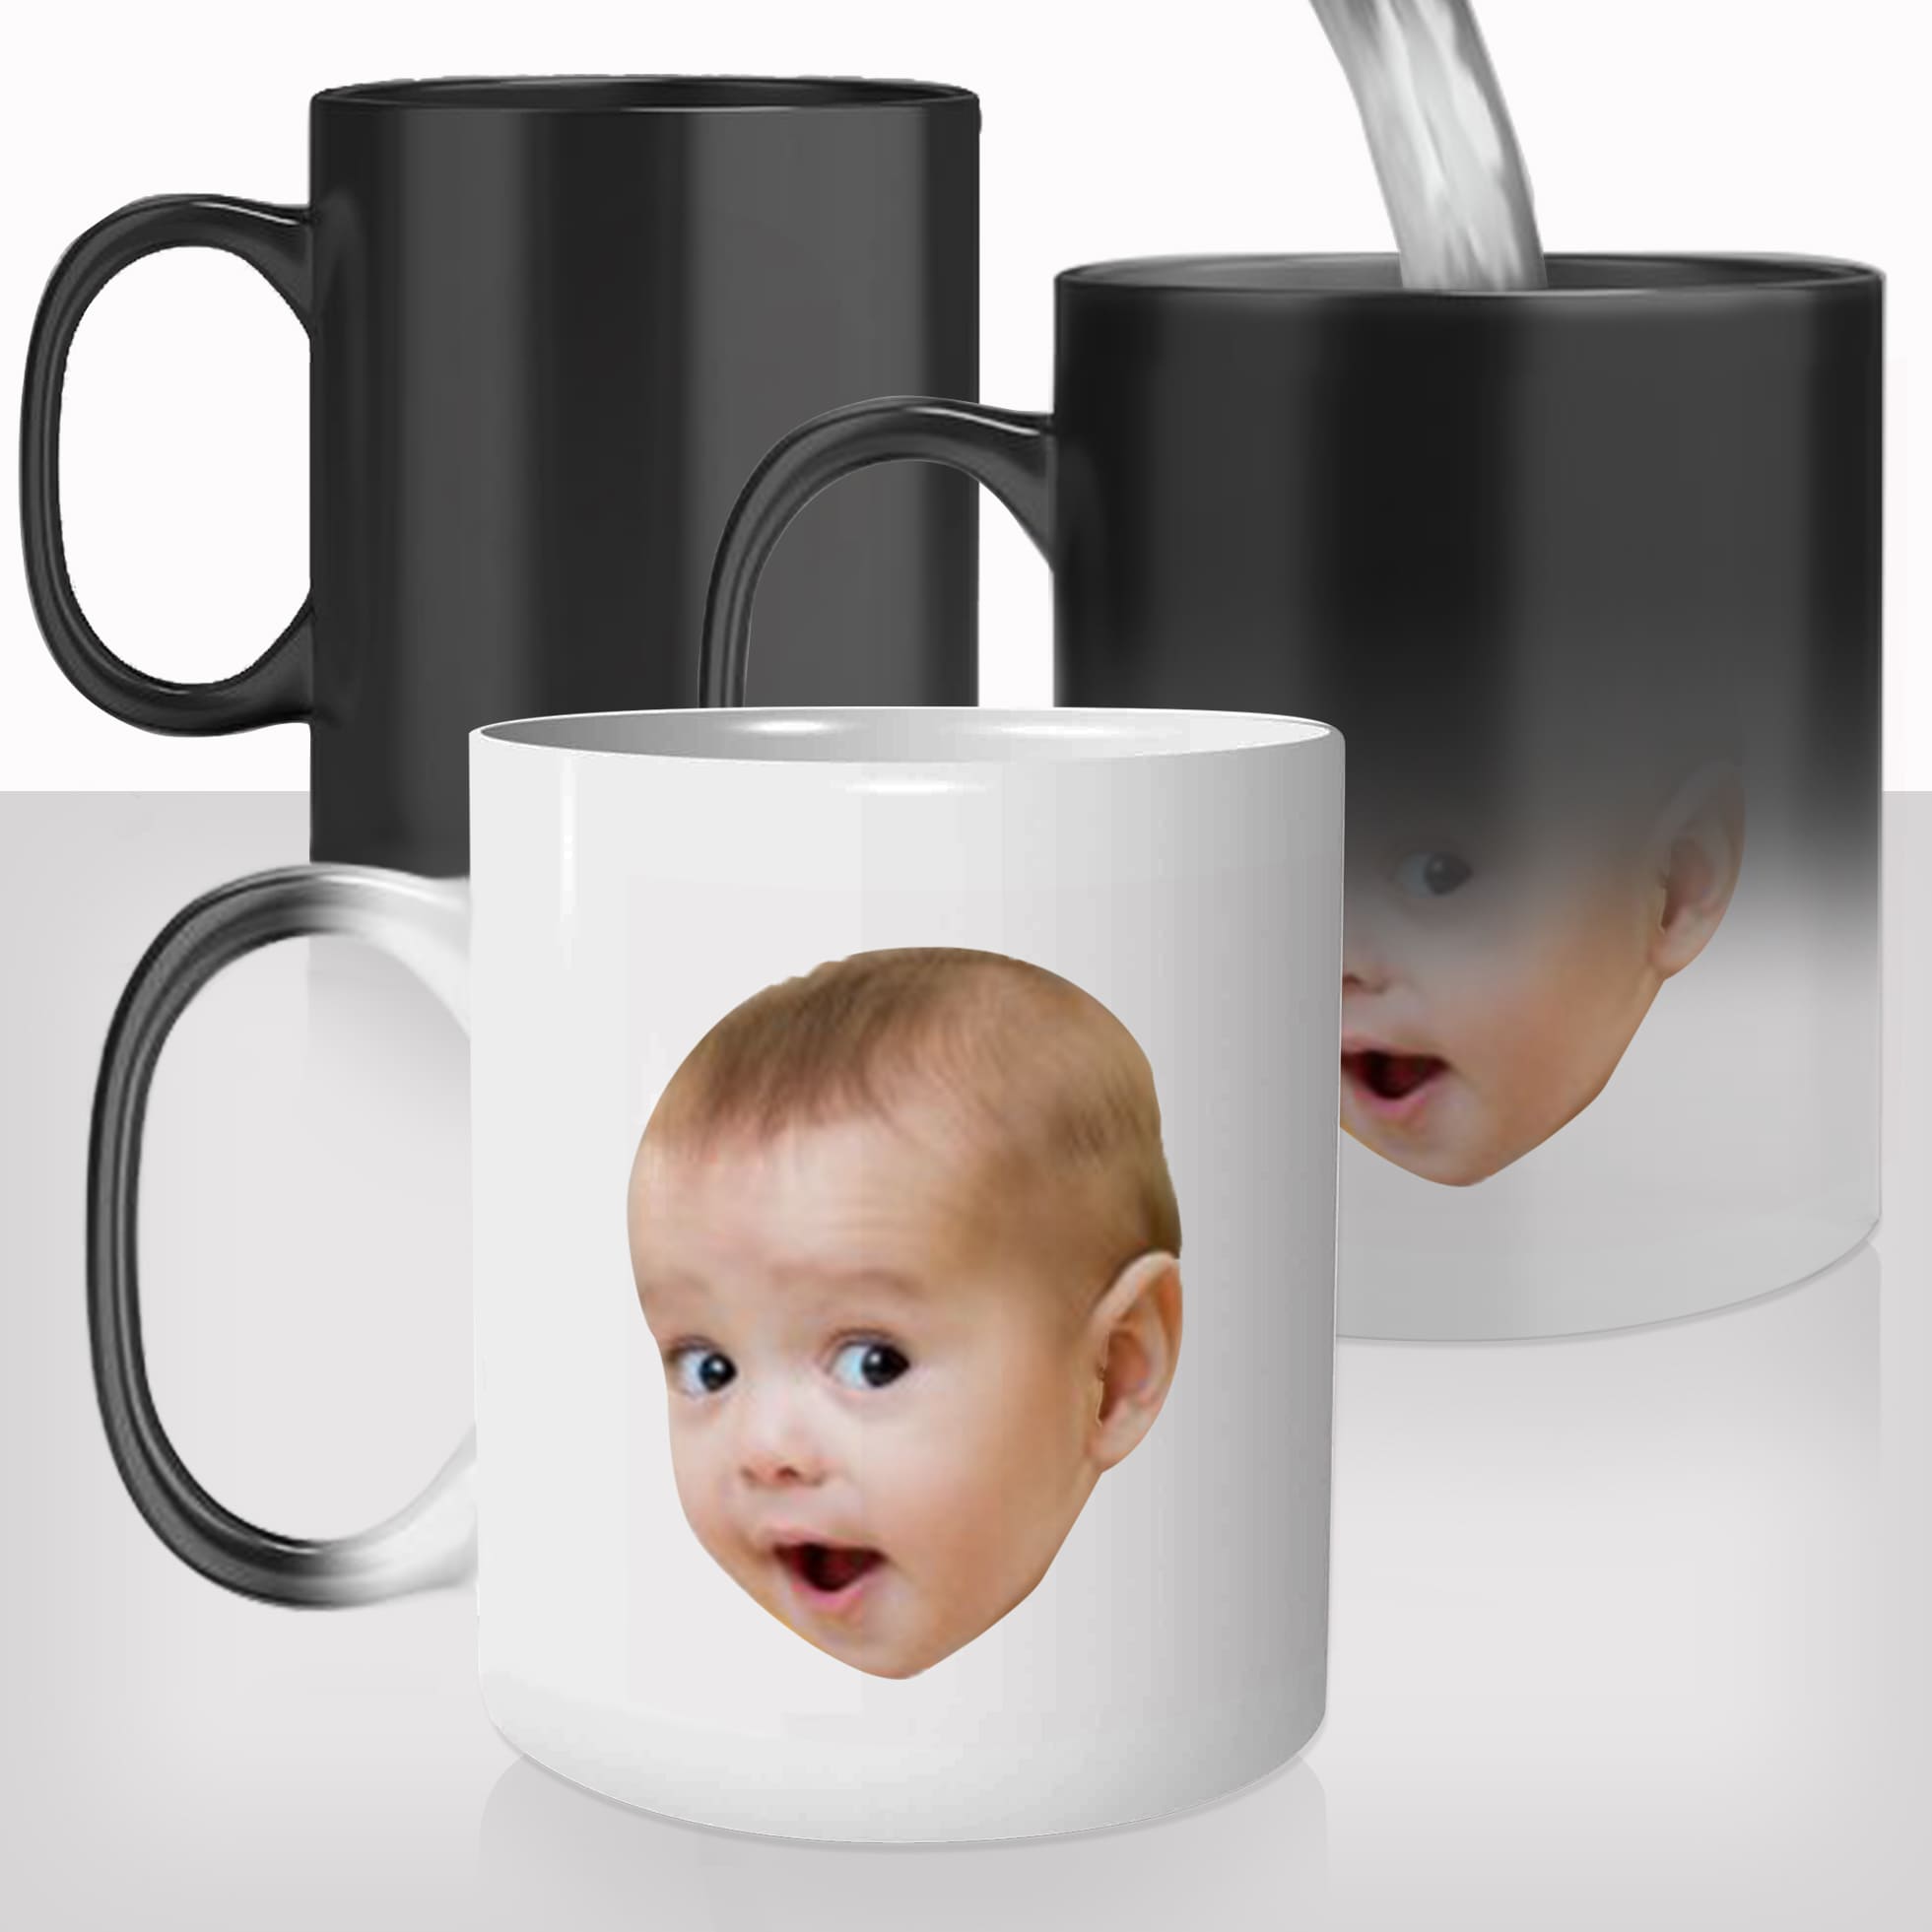 mug-magique-personnalisable-thermoreactif-thermique-super-maman-coeur-fête-des-mères-tete-bébé-photo-personnalisé-fun-idée-cadeau-original2